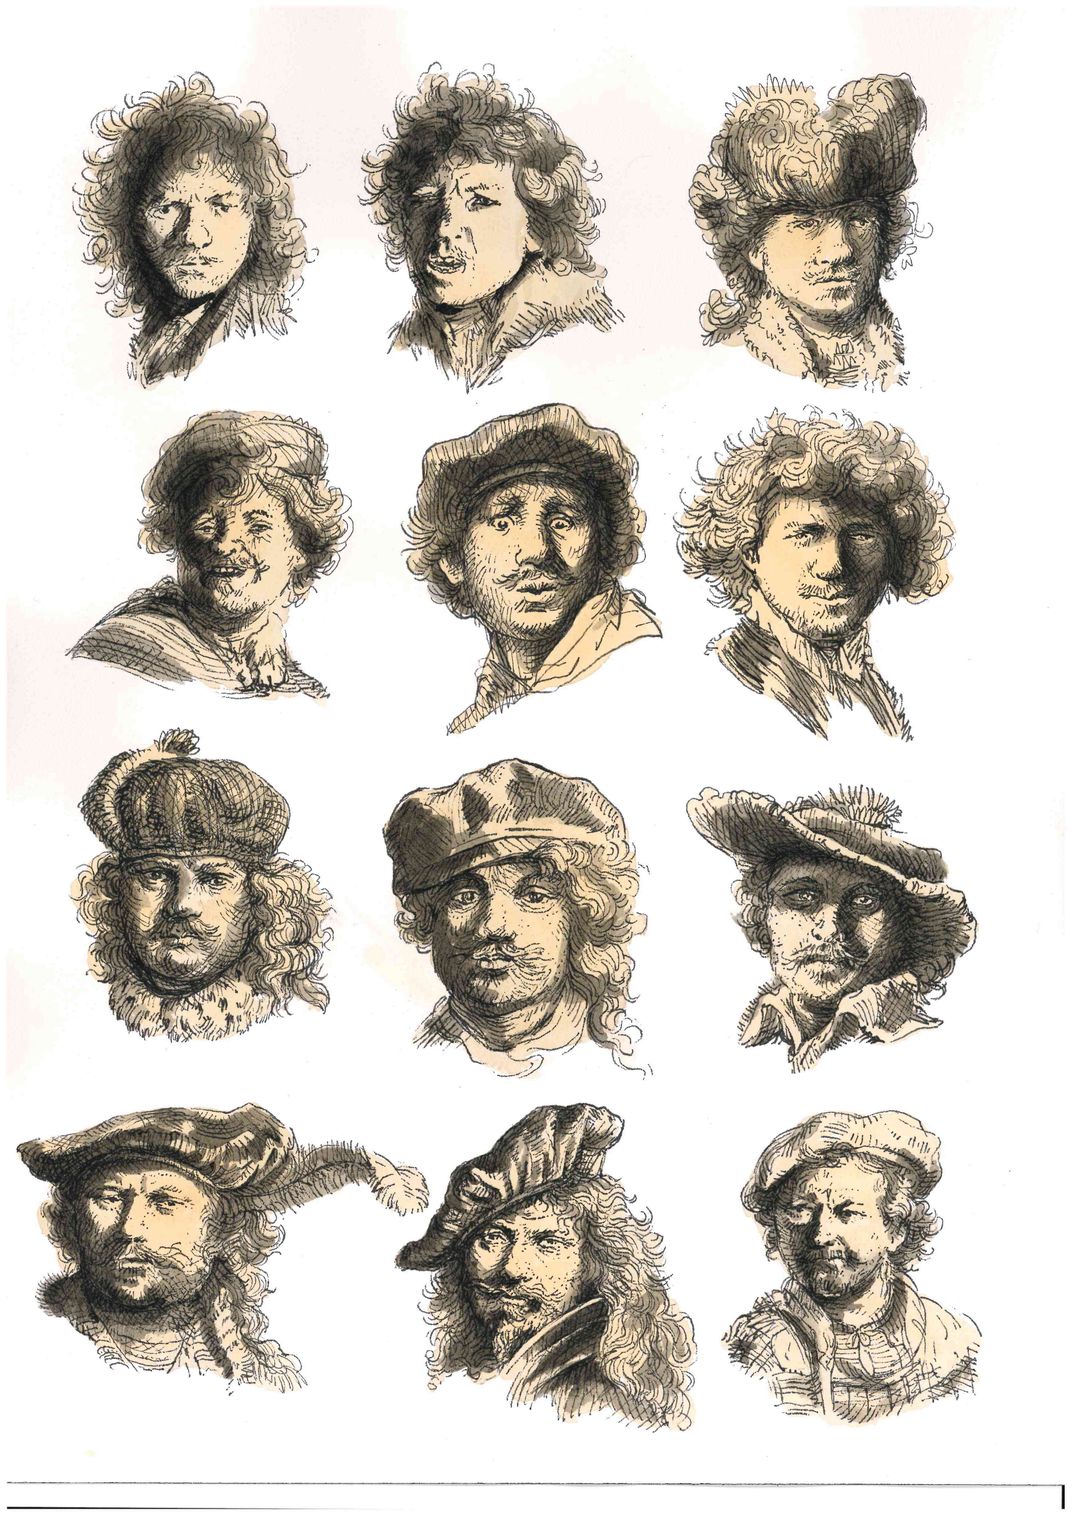 Rembrandt portrait designs